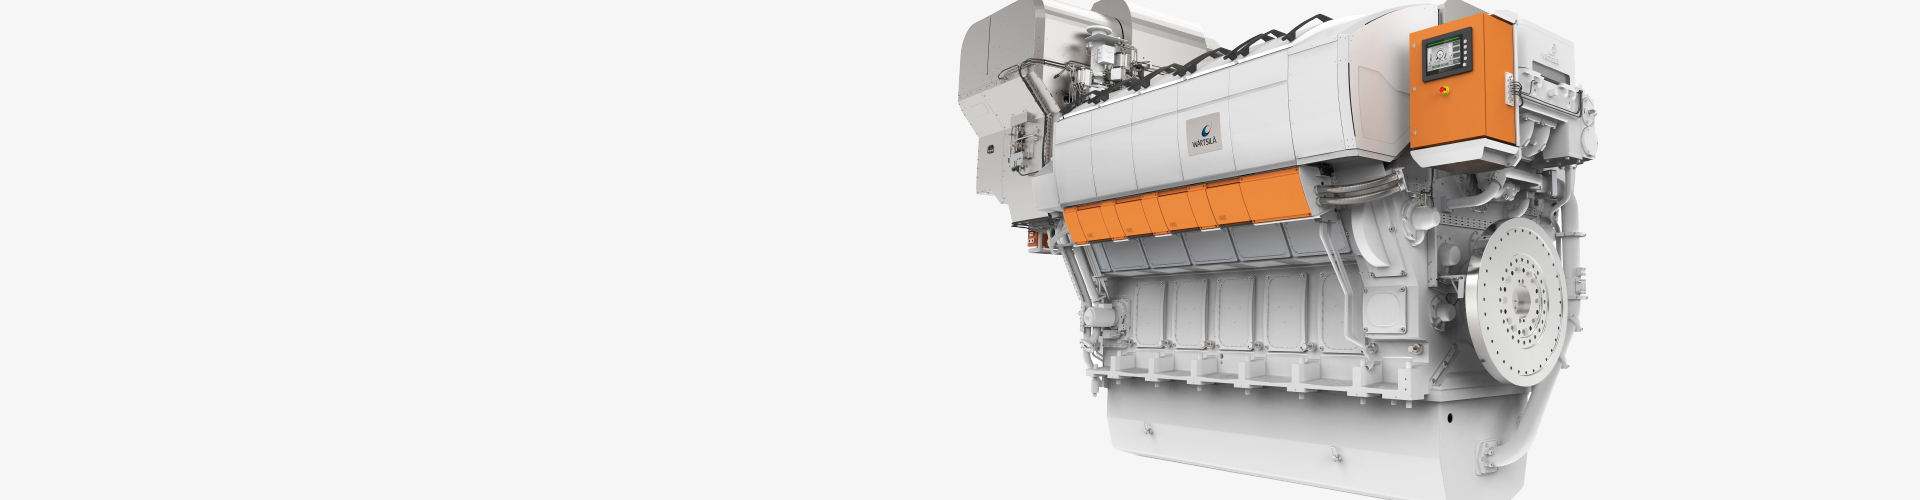 Wärtsilä 31 - the most efficient 4-stroke marine engine